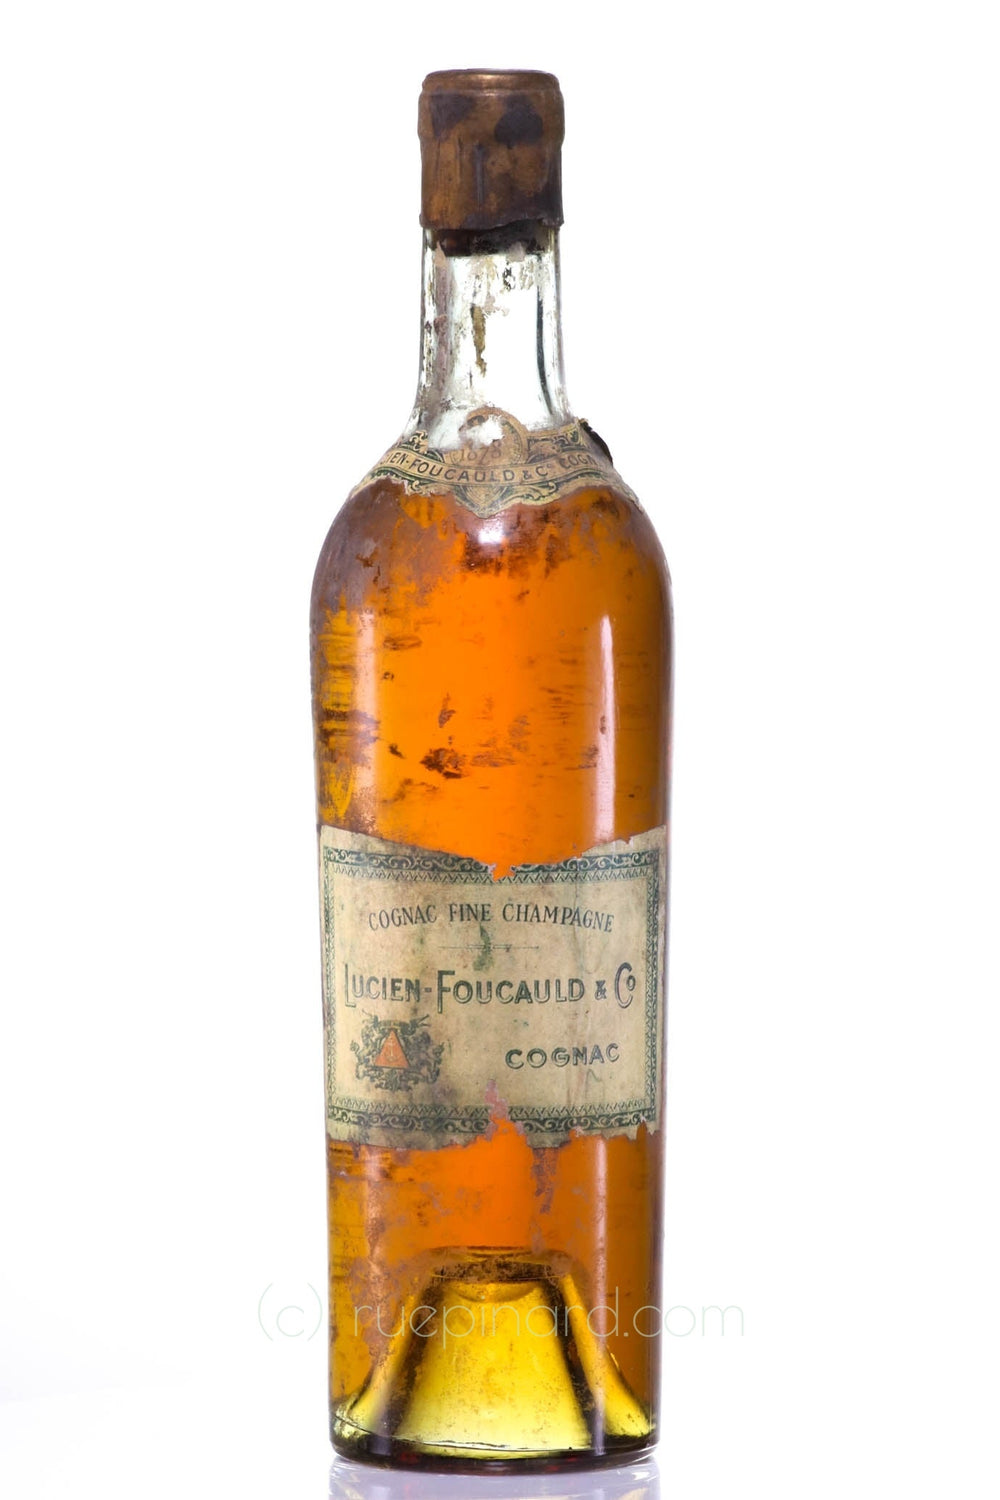 Lucien Foucauld & Co Cognac 1878 - Rue Pinard